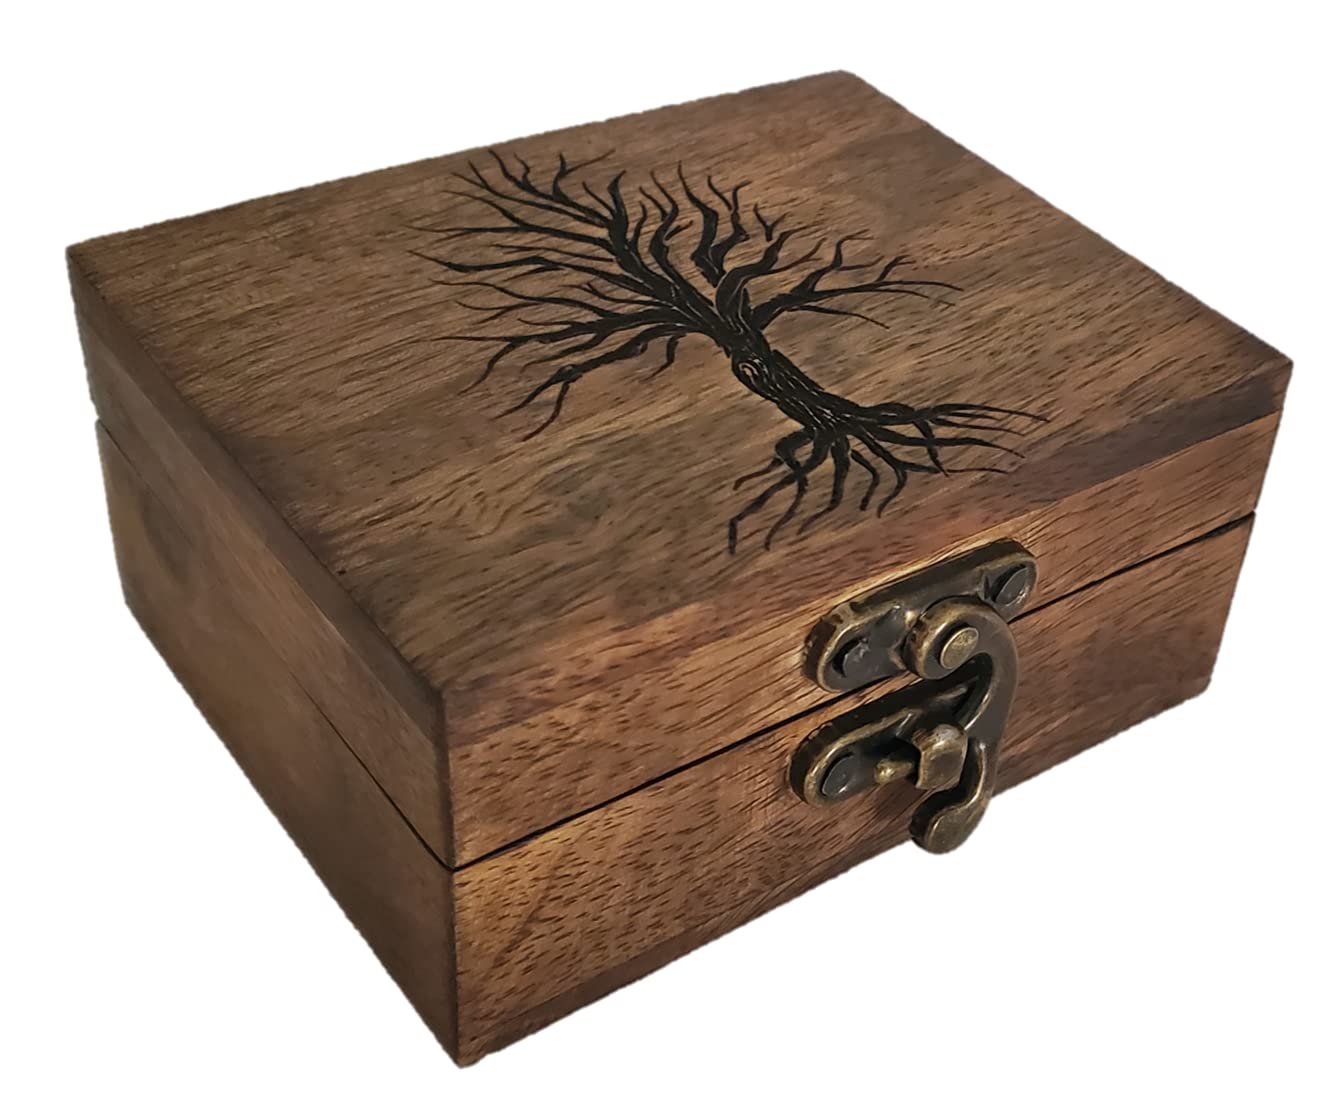 JB&C Premium Tree of Life Box Wooden Jewelry Box for Keepsake, Trinket Box Wooden tree of life decorative box (3.75 x 3 x 1.75)